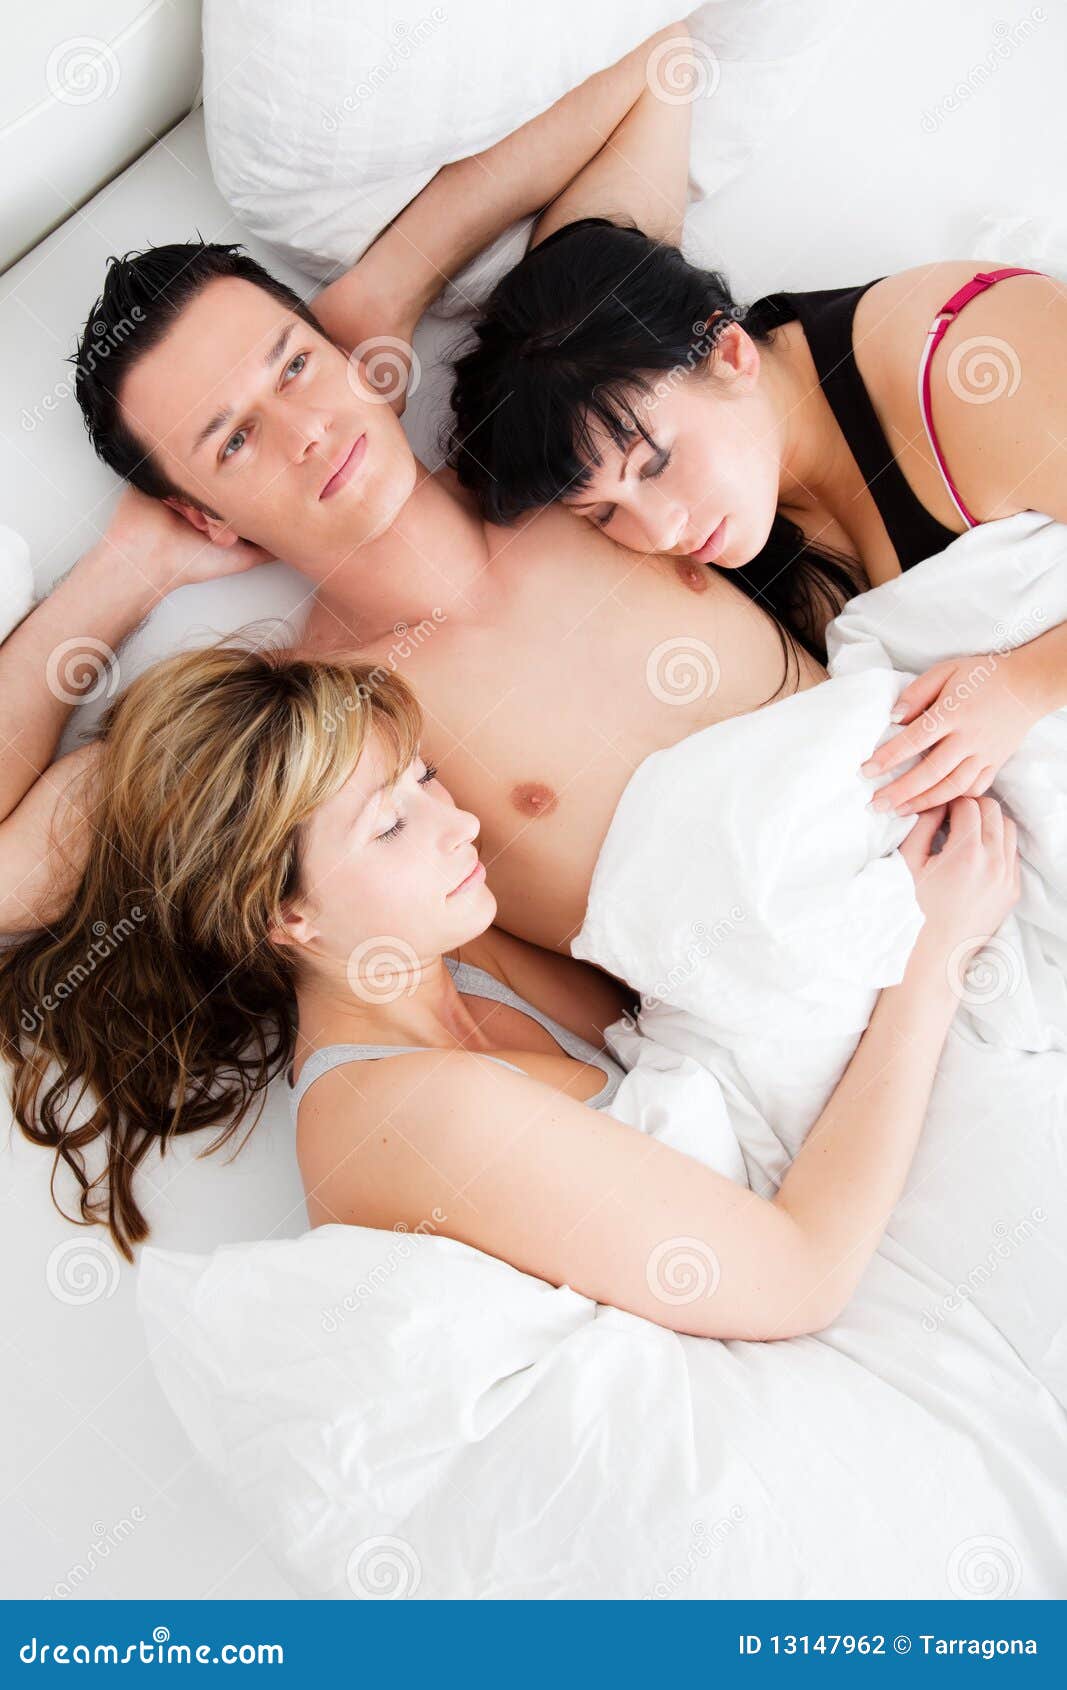 групповой с женой в кровати фото 116